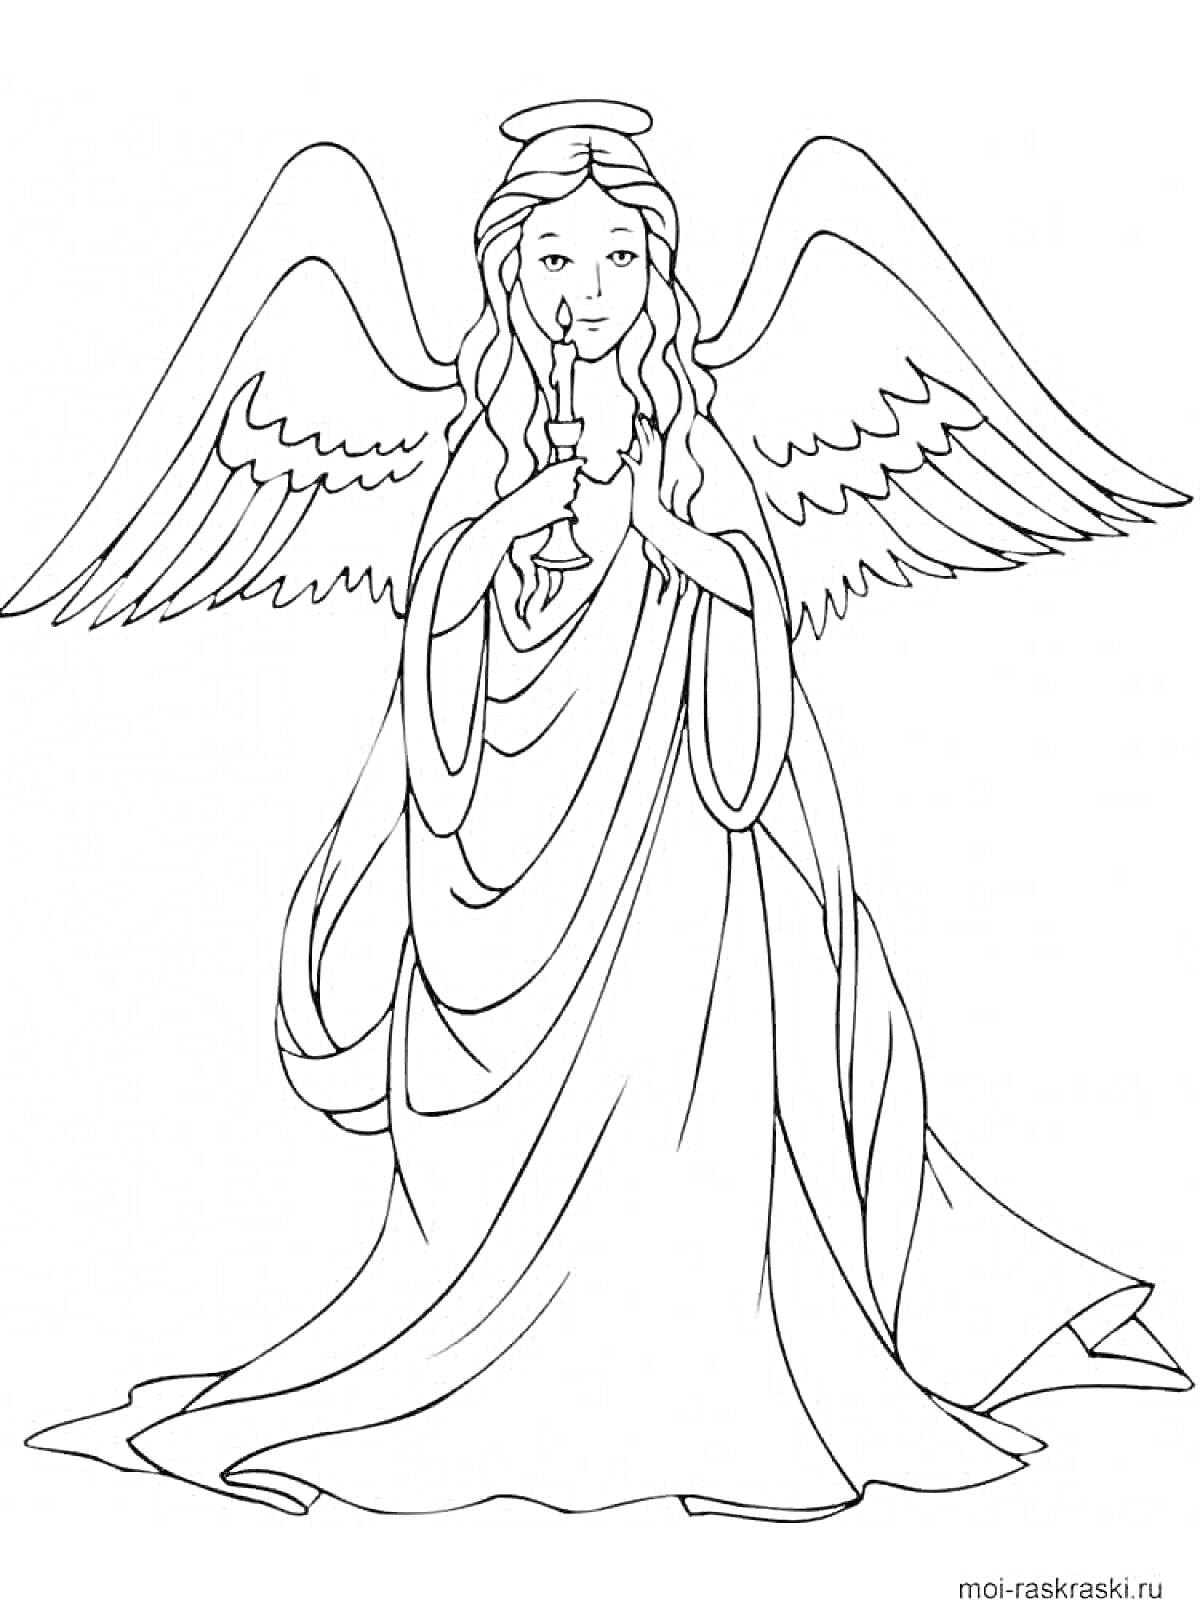 Раскраска Ангел с крыльями и свечой в руках